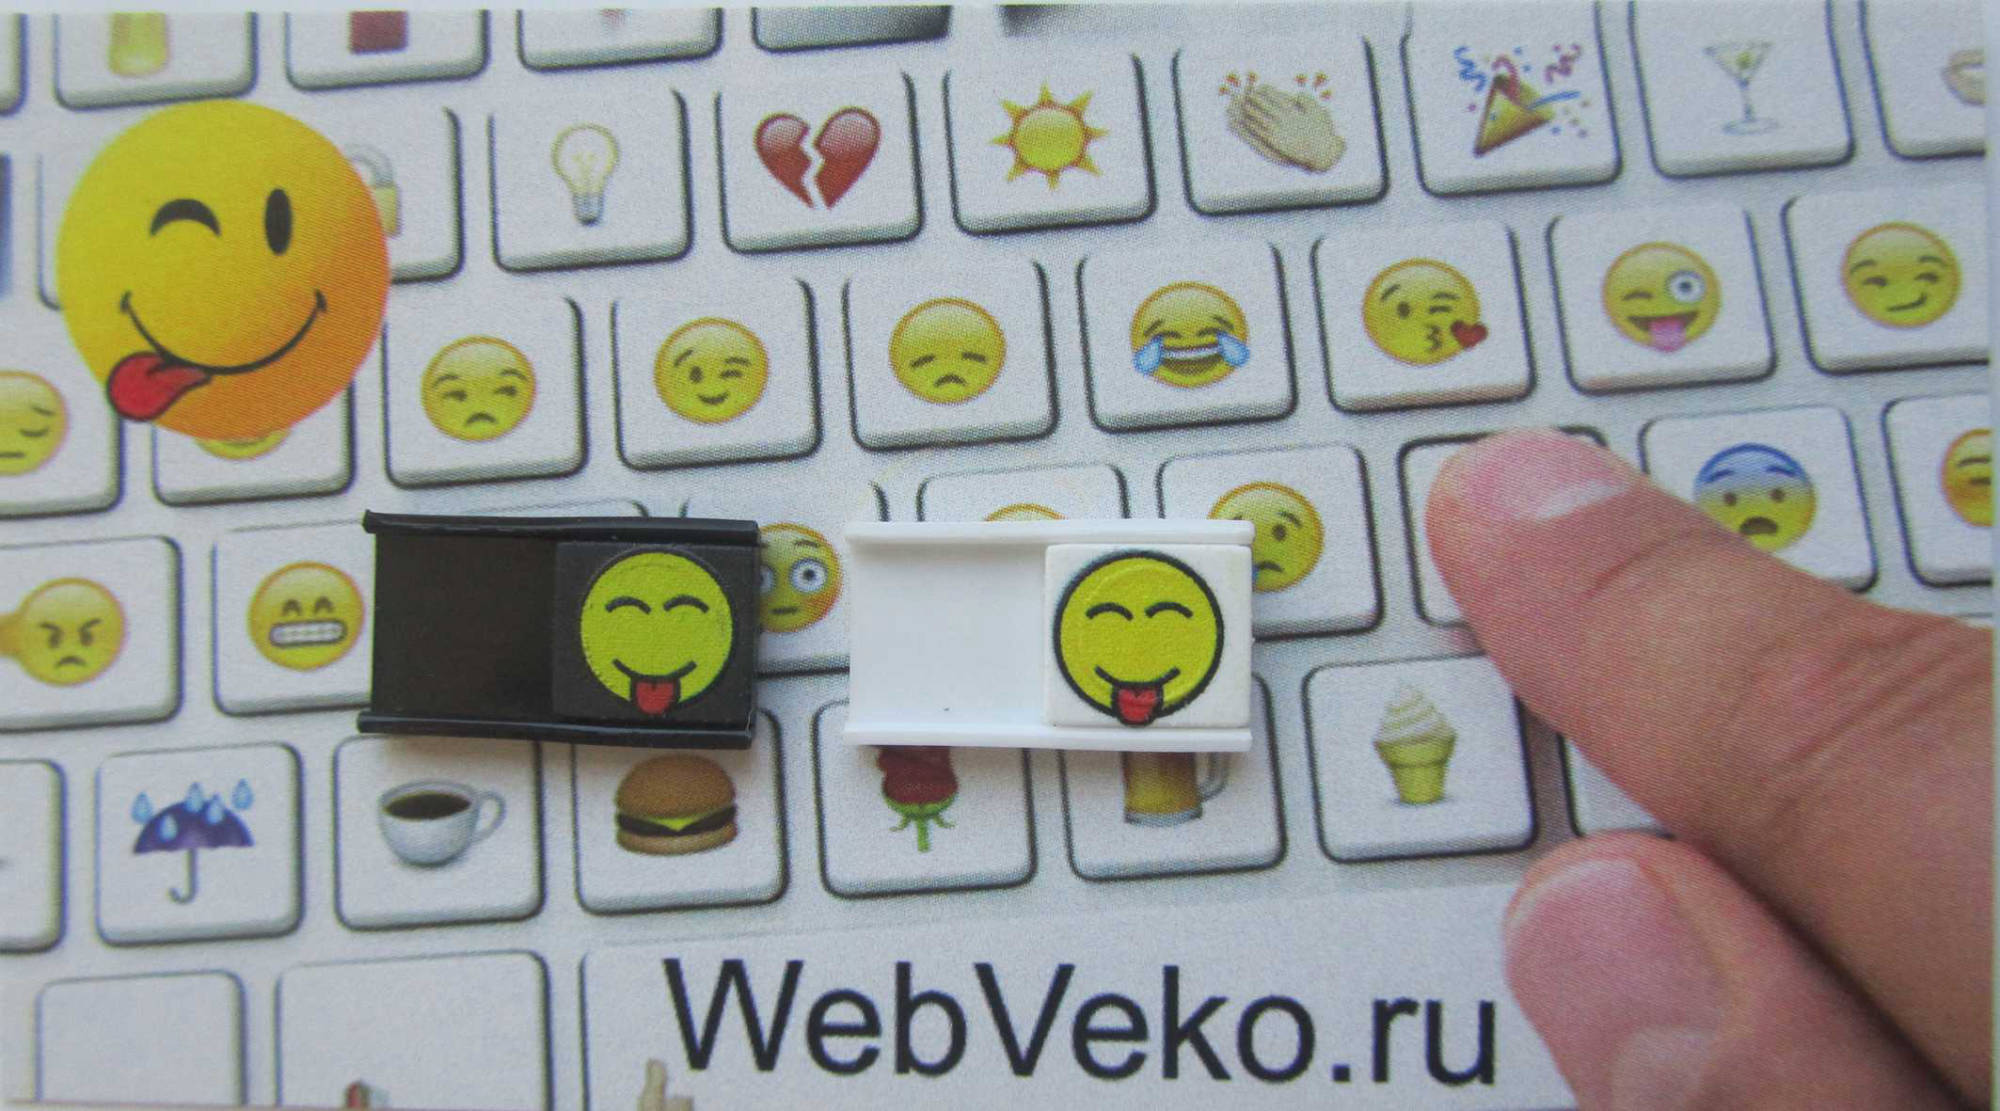 Шторка для веб камеры Веб-Веко - рекламный носитель и оригинальный подарок